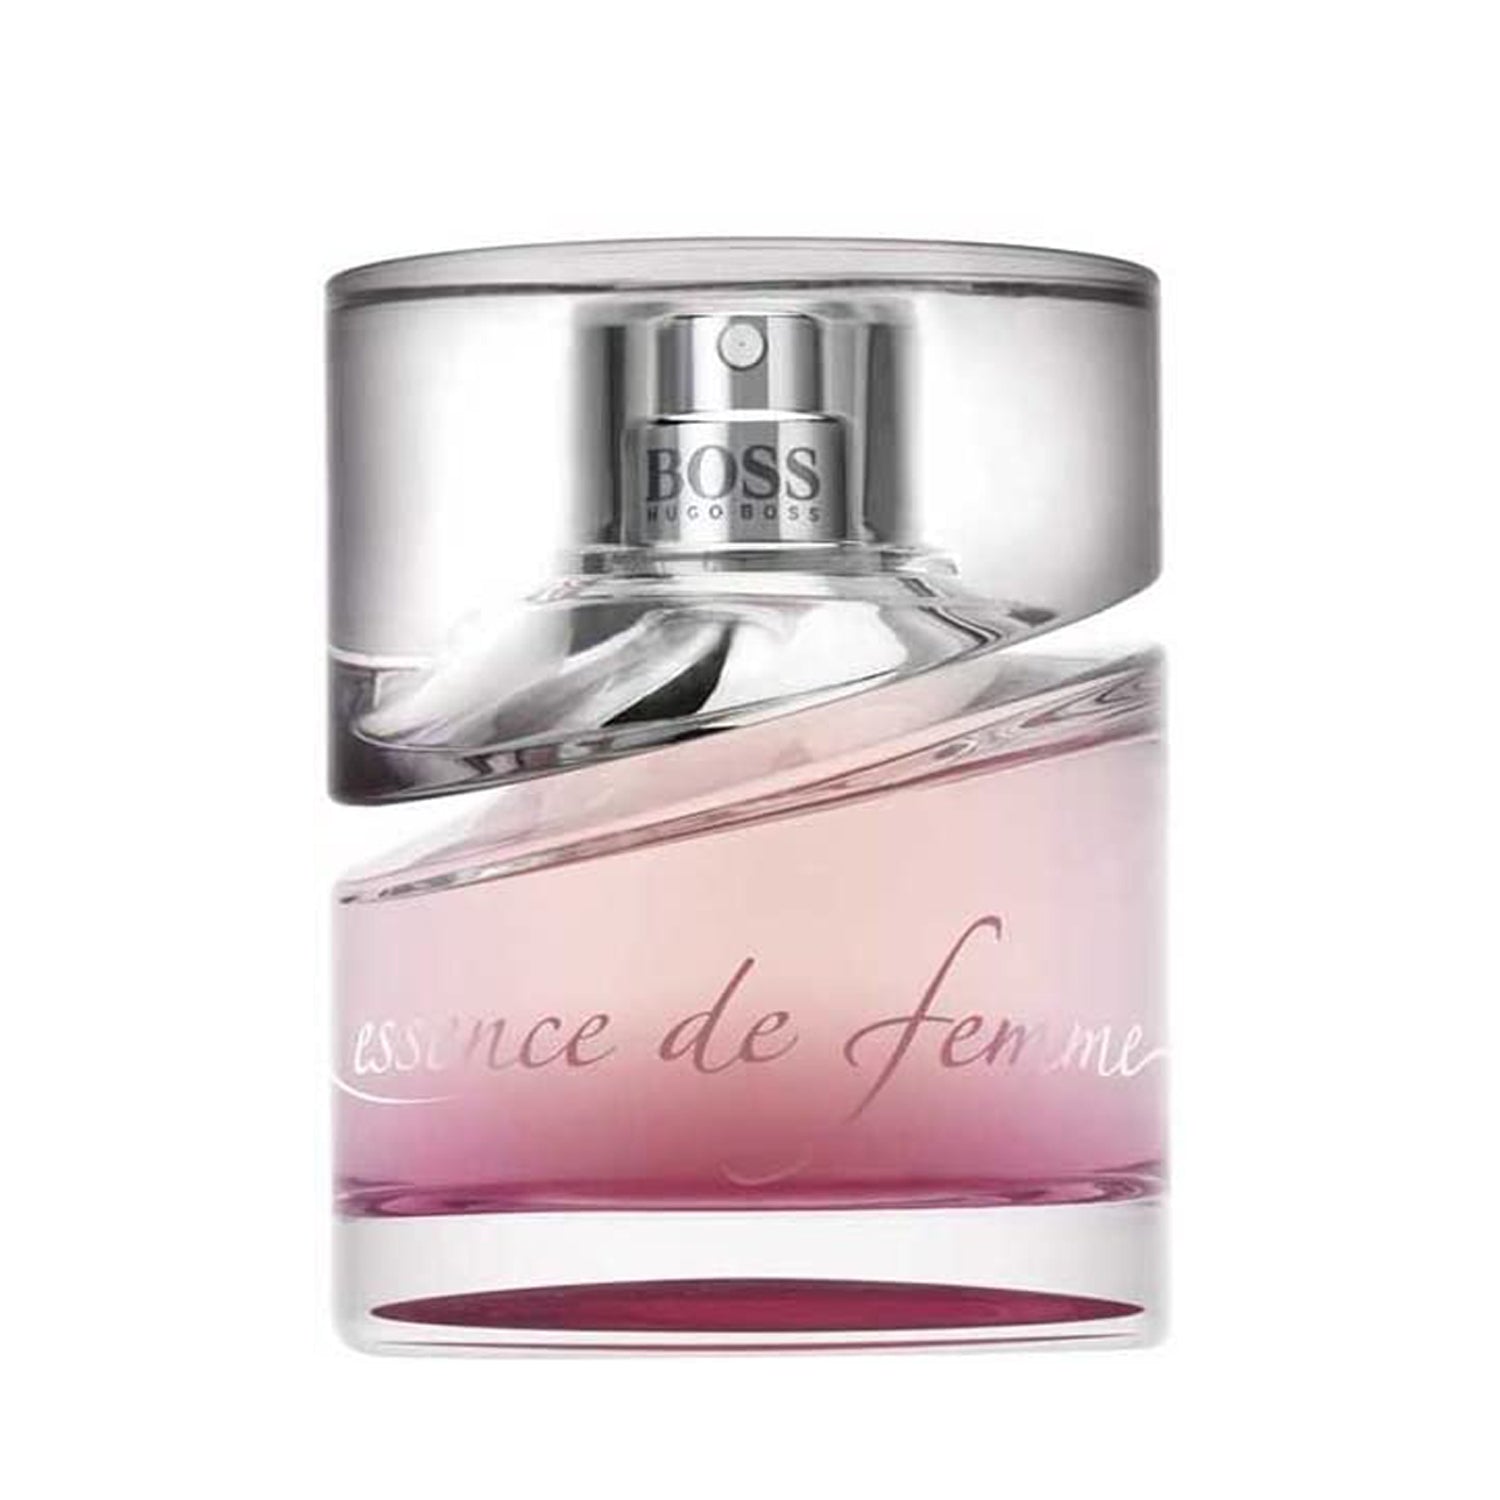 Hugo Boss Essence De Femme Parfum Eau de Parfum Concentrate Spray 50ml